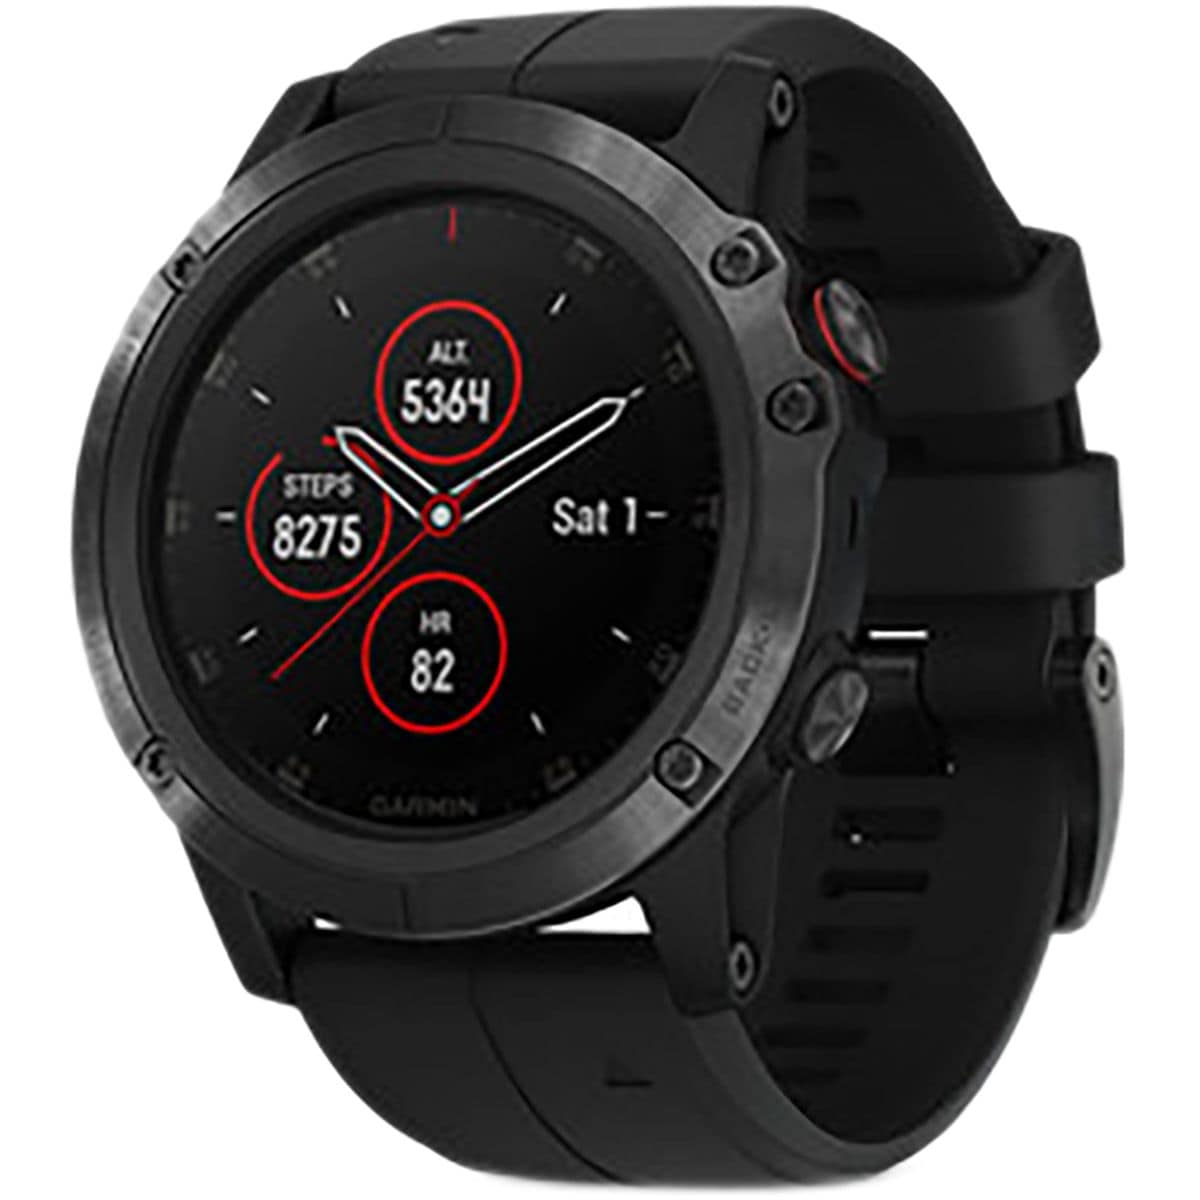 Garmin Fenix 5x Plus Sapphire GPS Watch